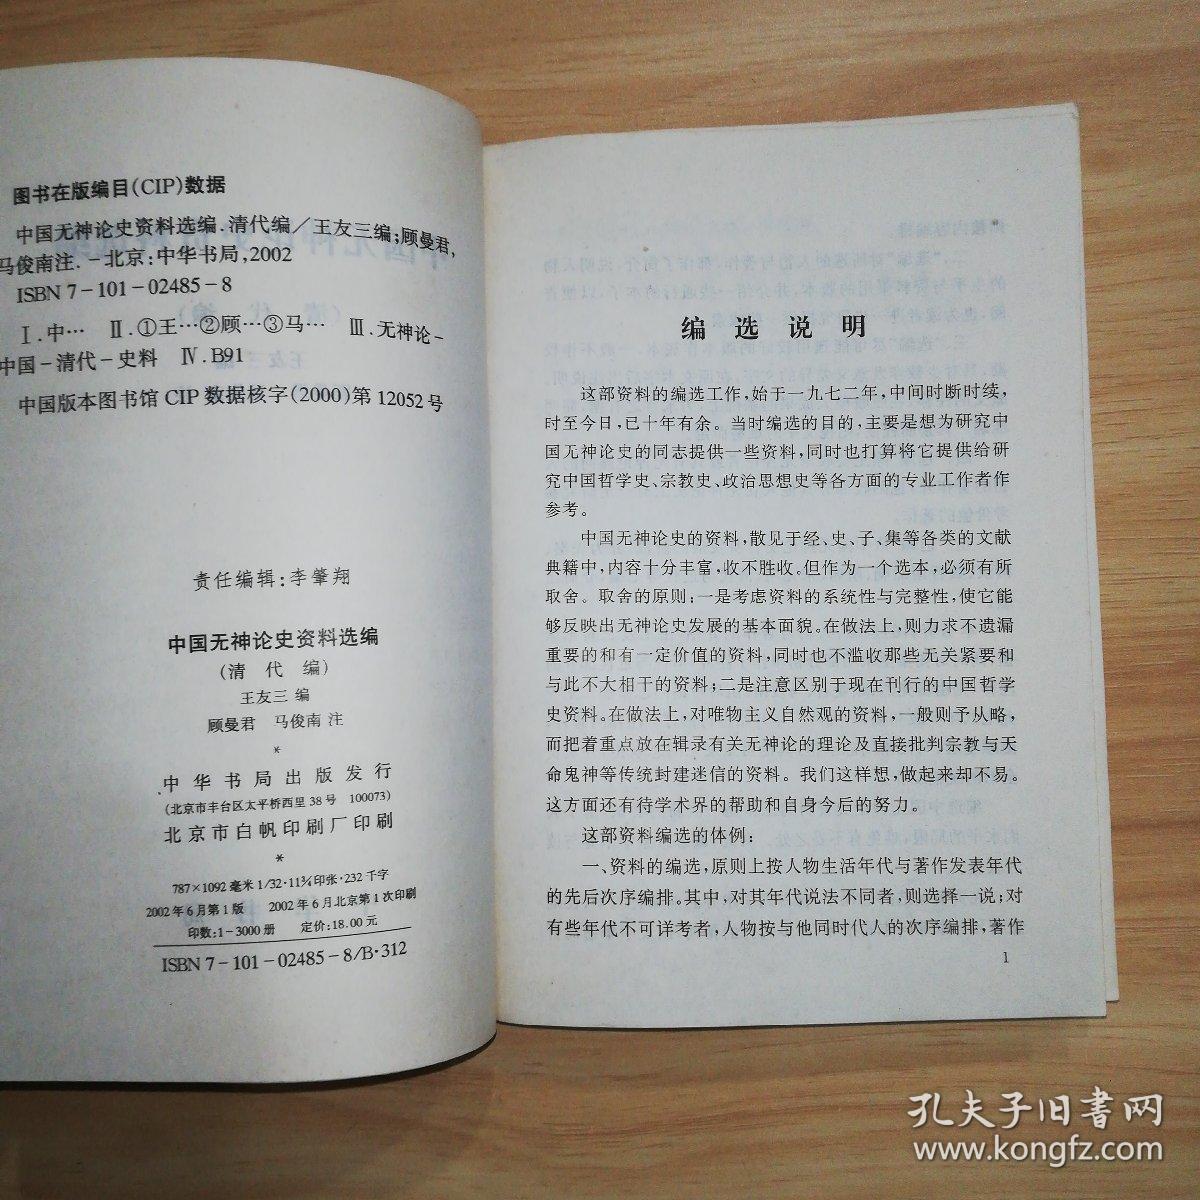 中国无神论史资料选编.近代编 清代编（2册合售）